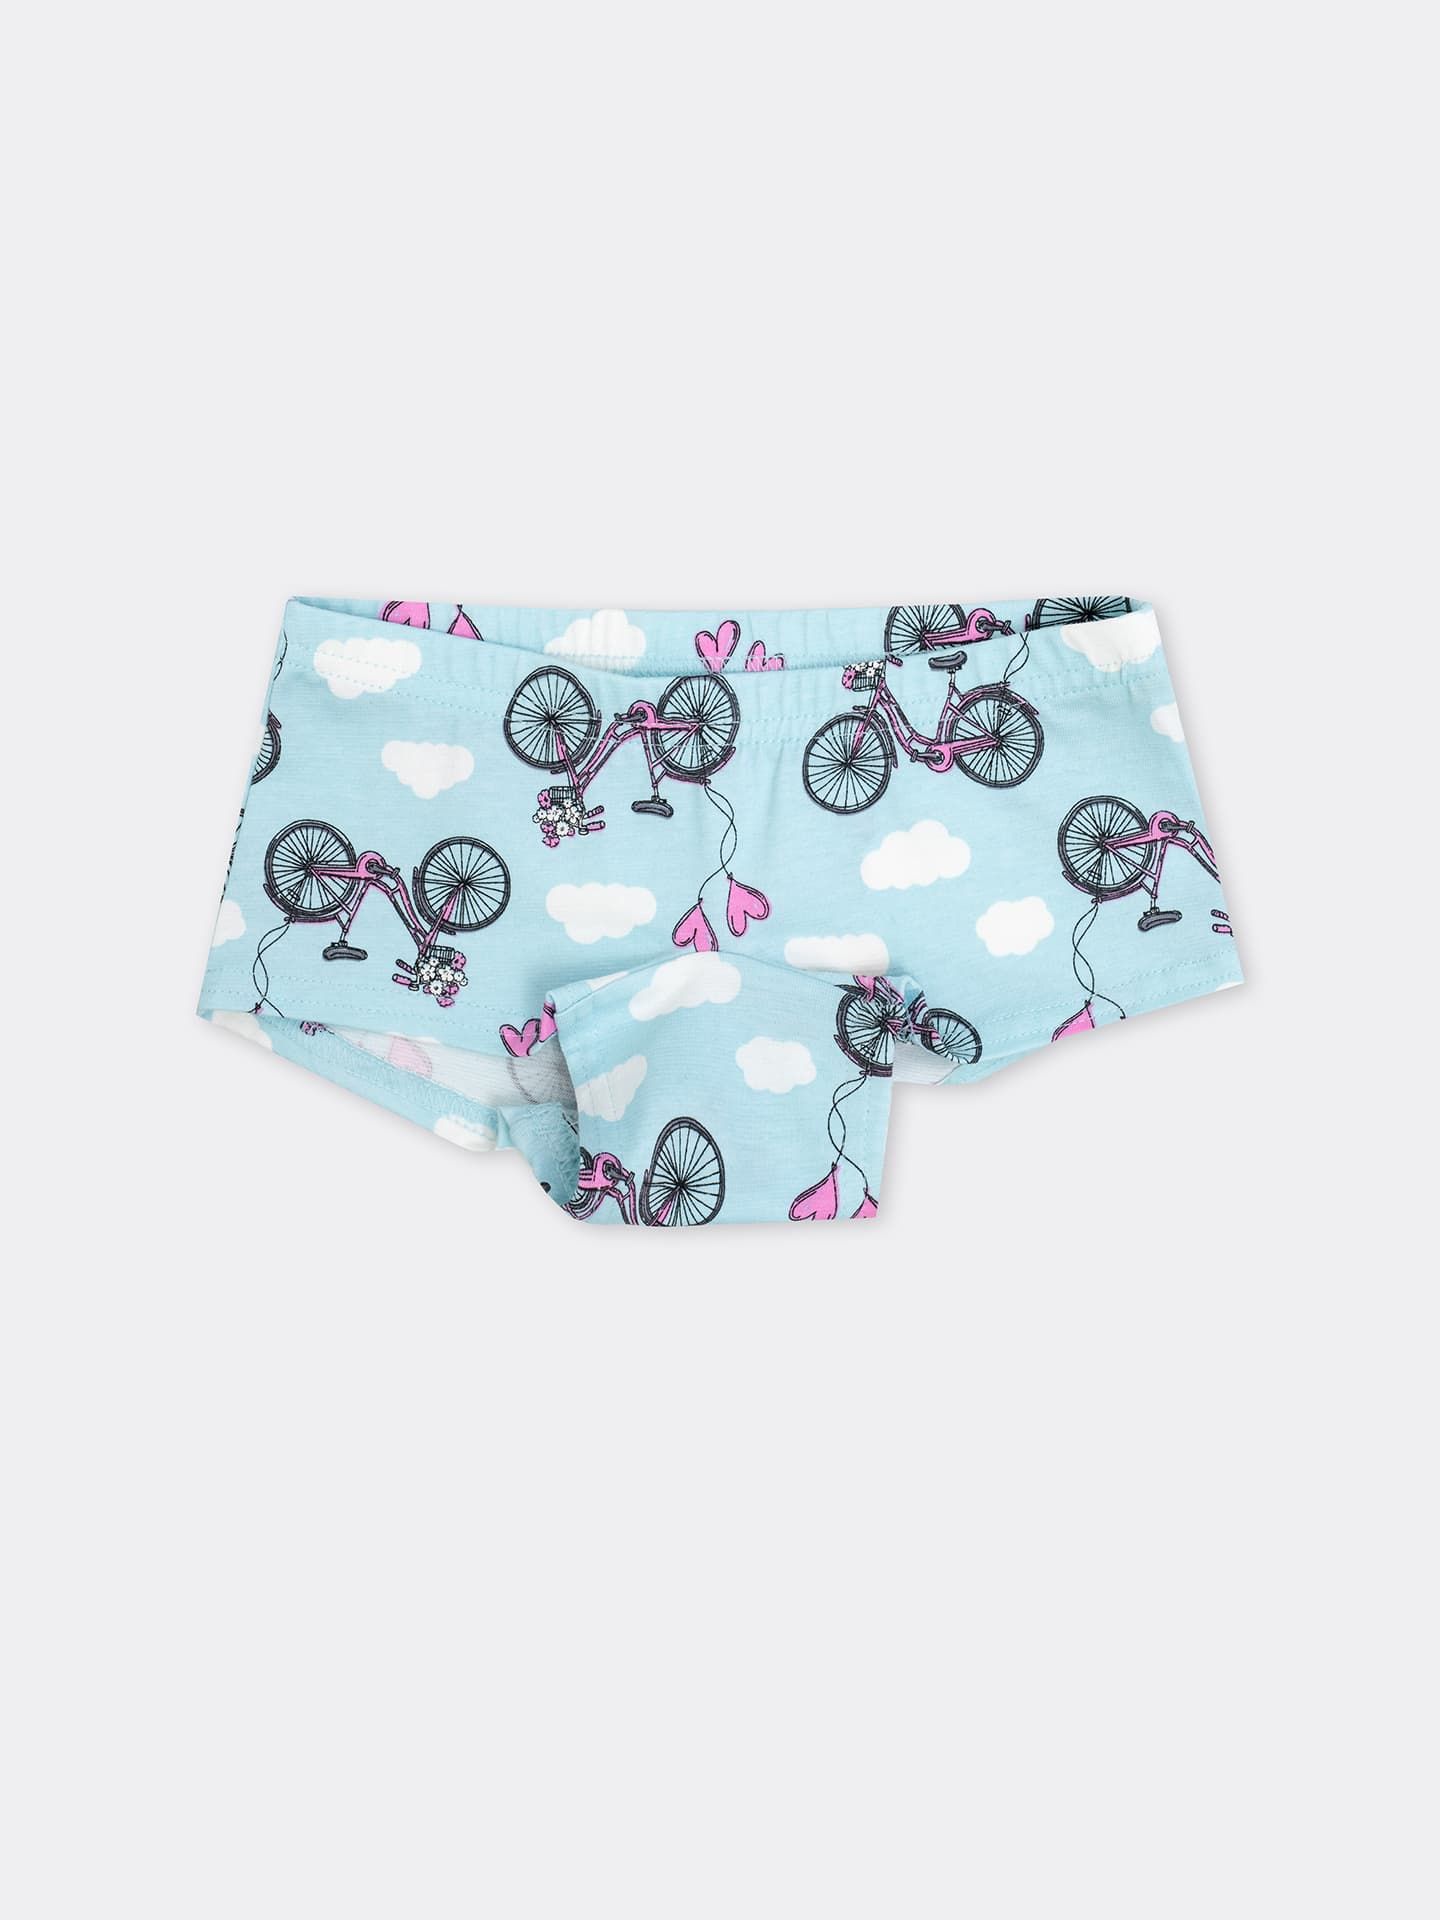 Трусики-шорты голубого цвета с изображением велосипедов для девочек